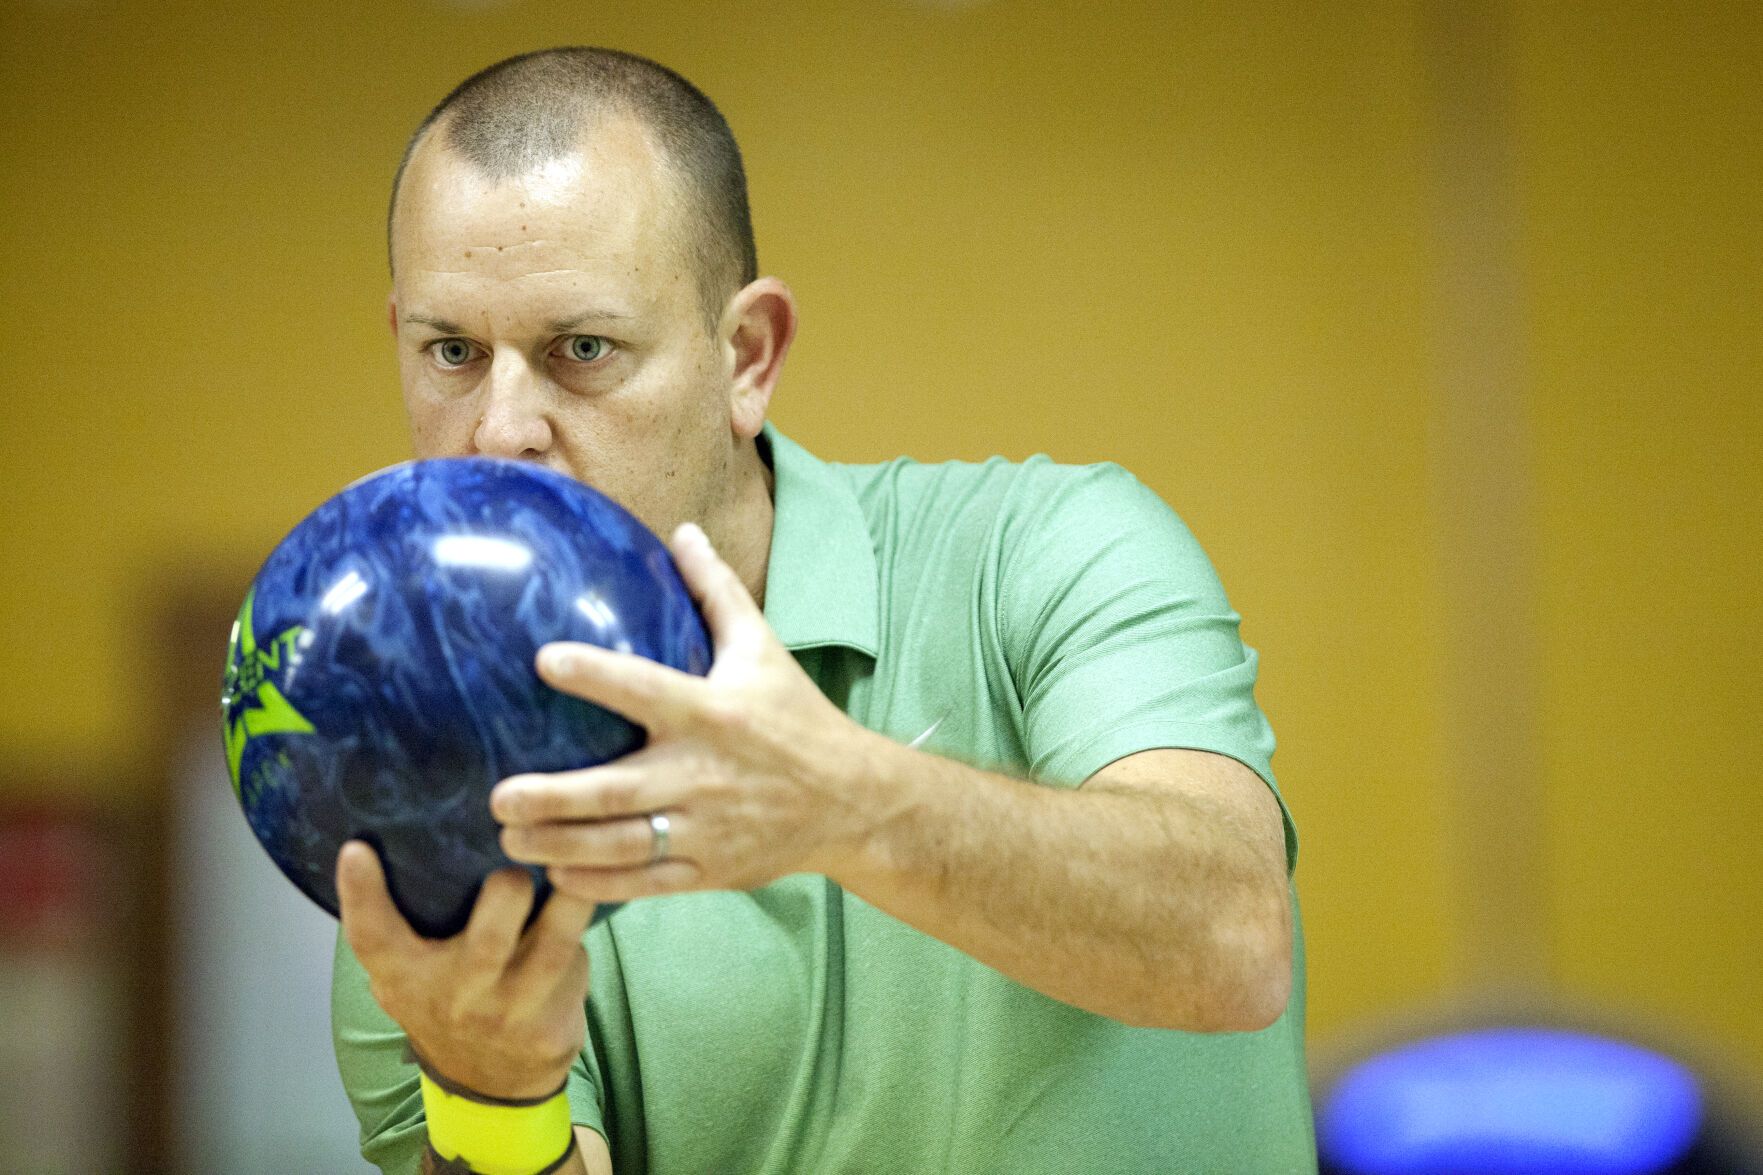 handicap amateur bowling tournament